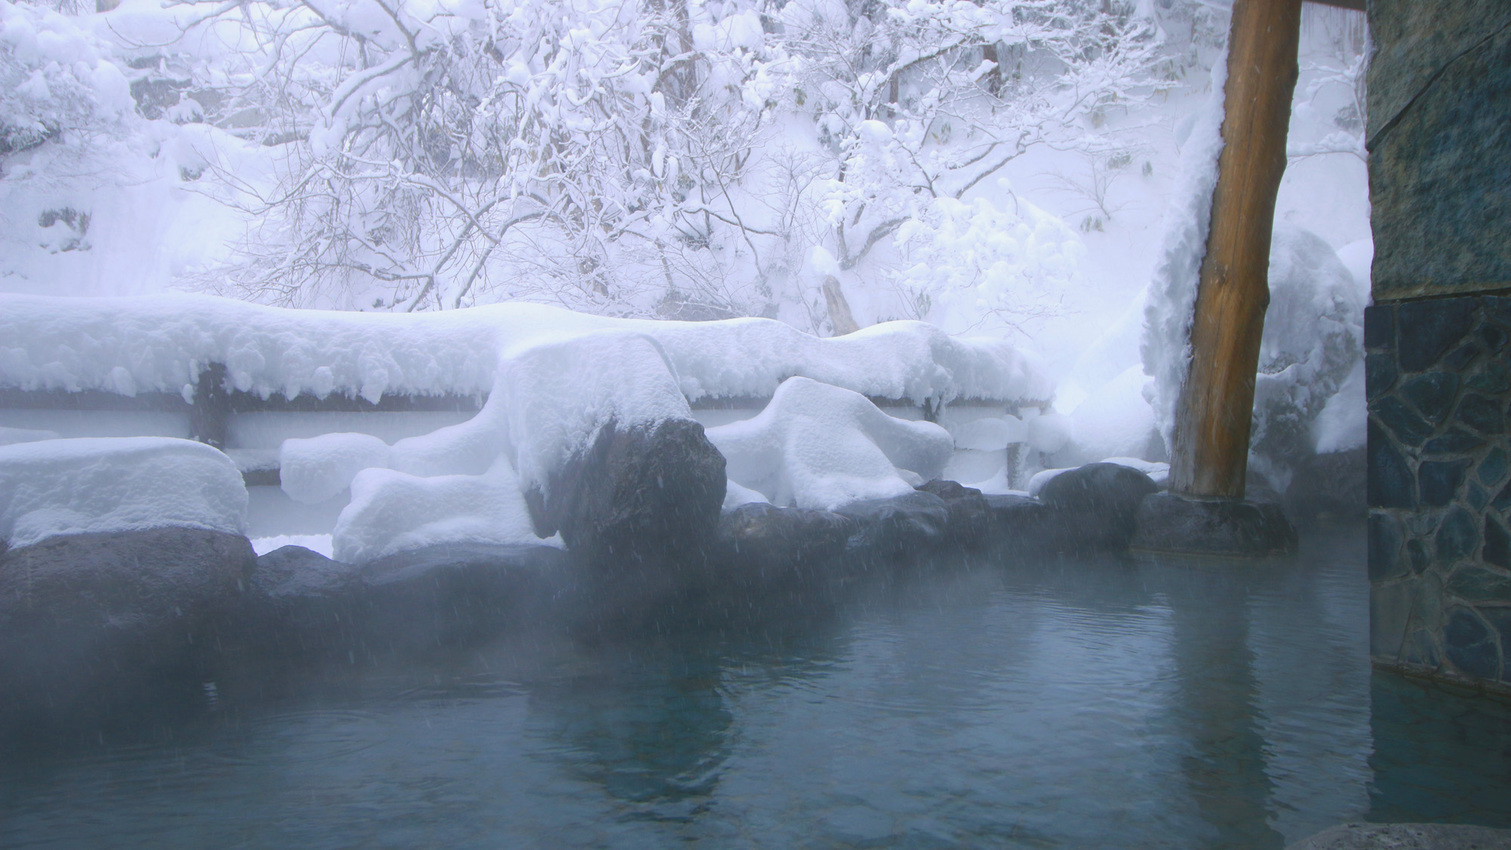 冬の露天風呂雪景色とともに雪も感じながらお楽しみください ♪